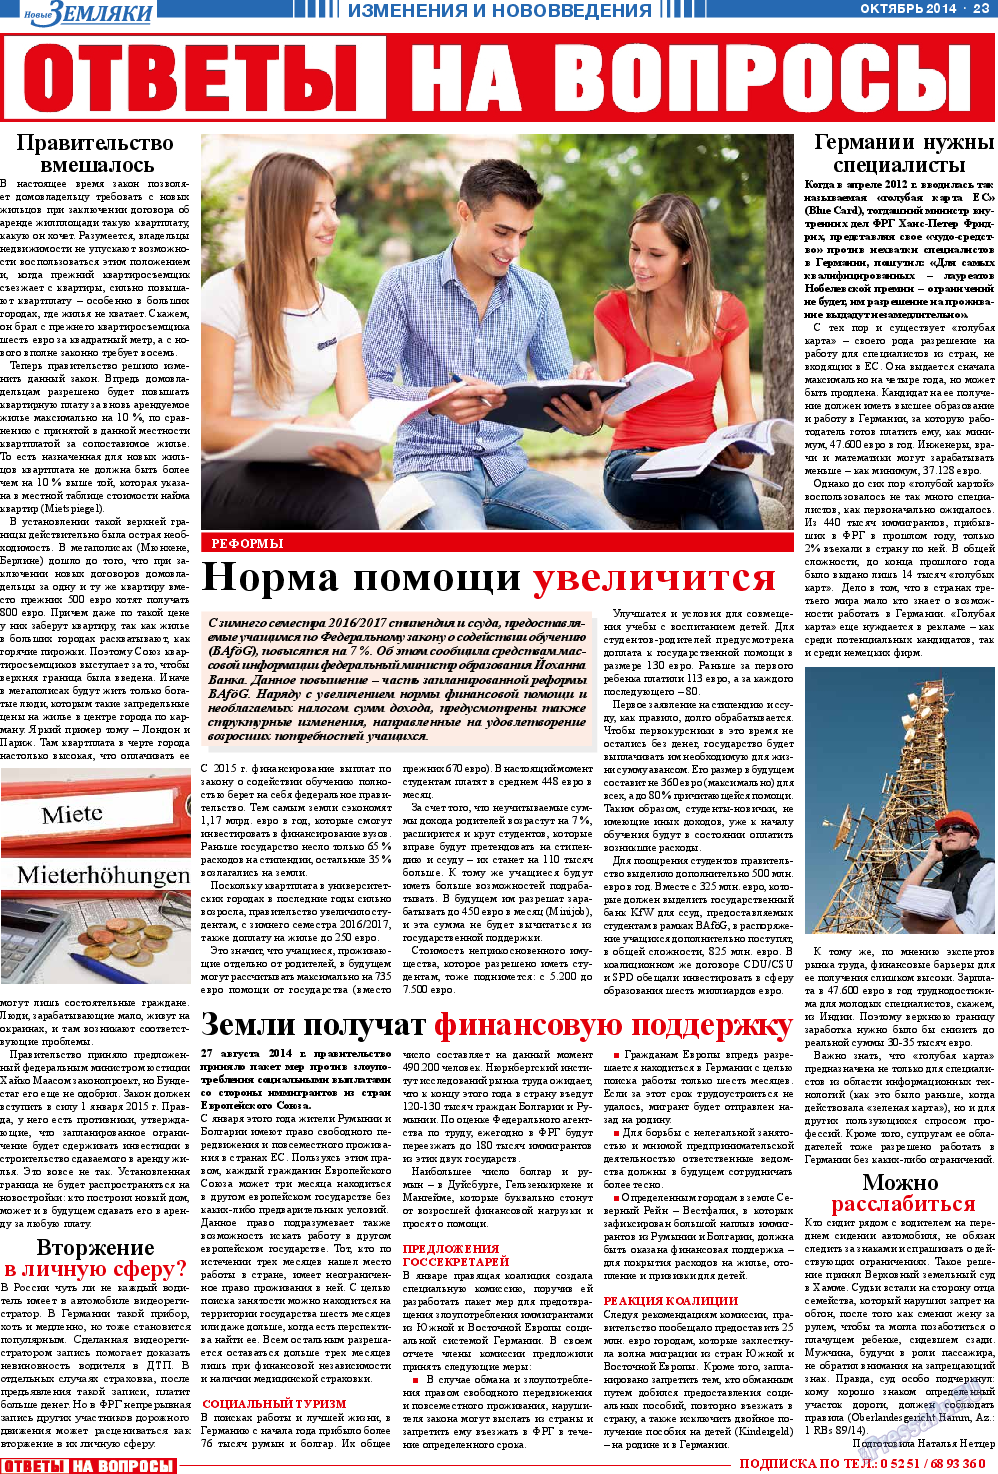 Новые Земляки, газета. 2014 №10 стр.23